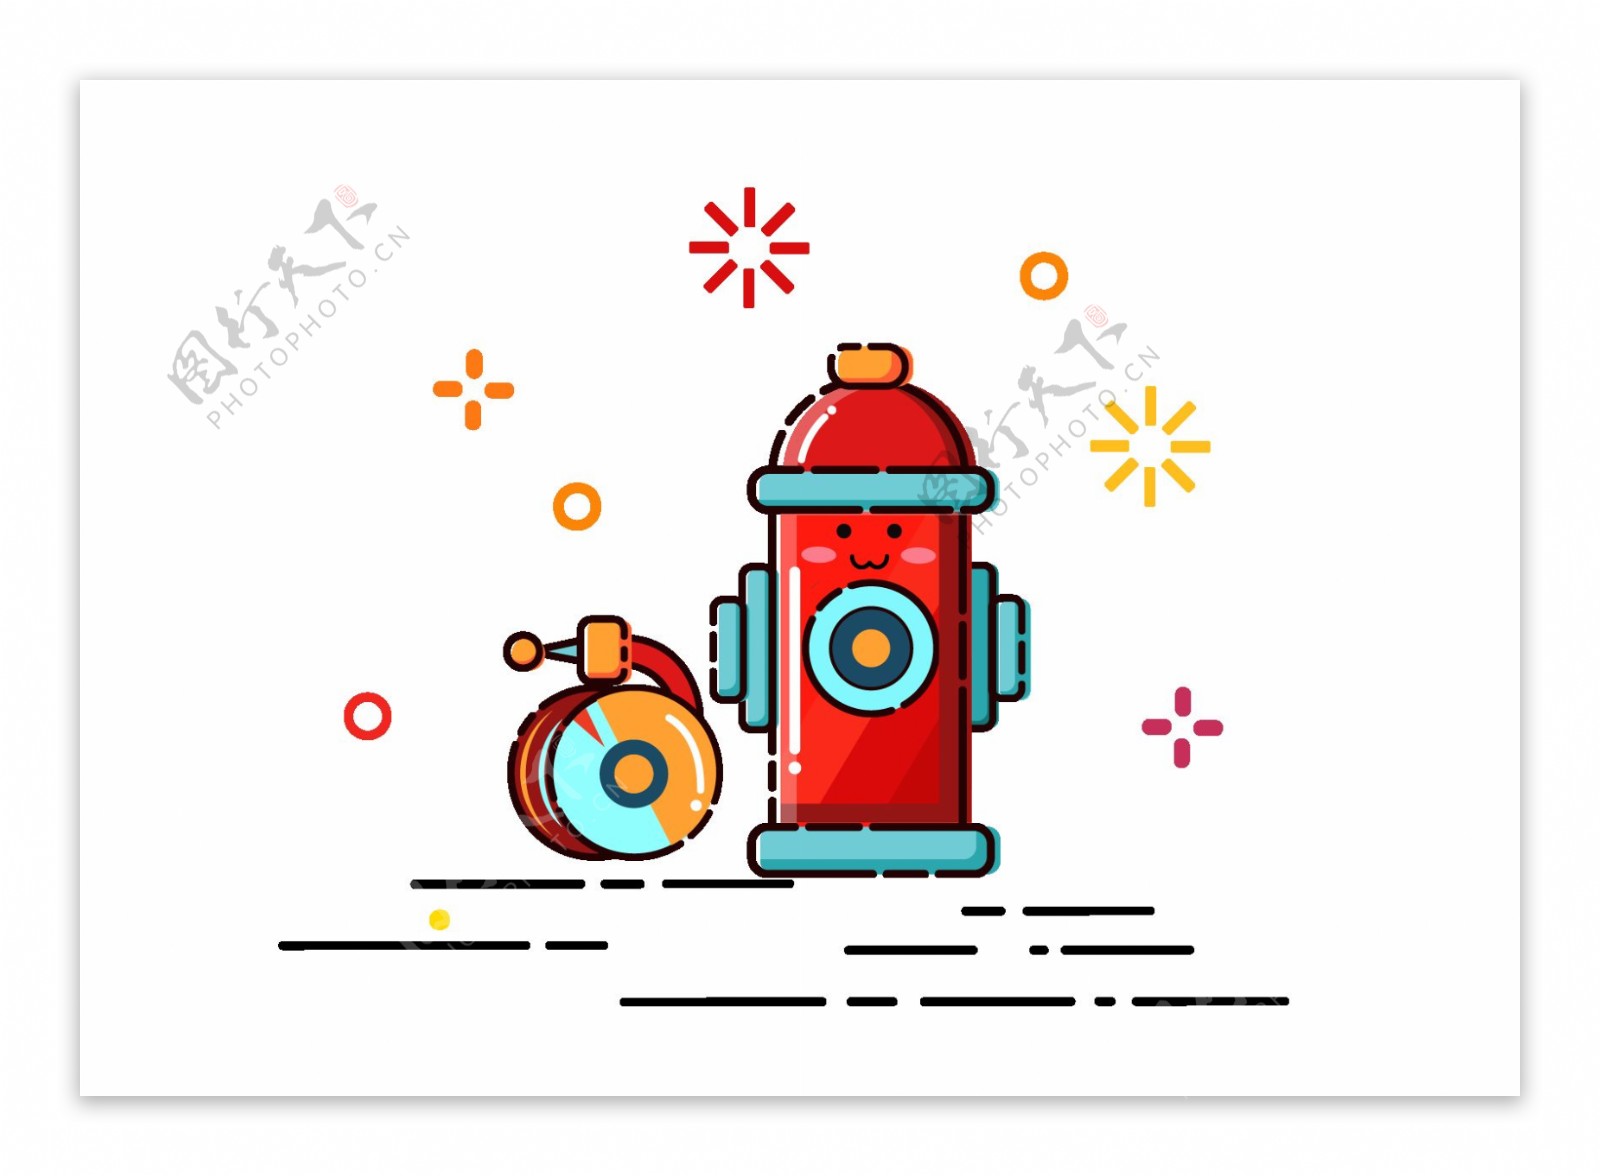 卡通消防栓背景设计元素